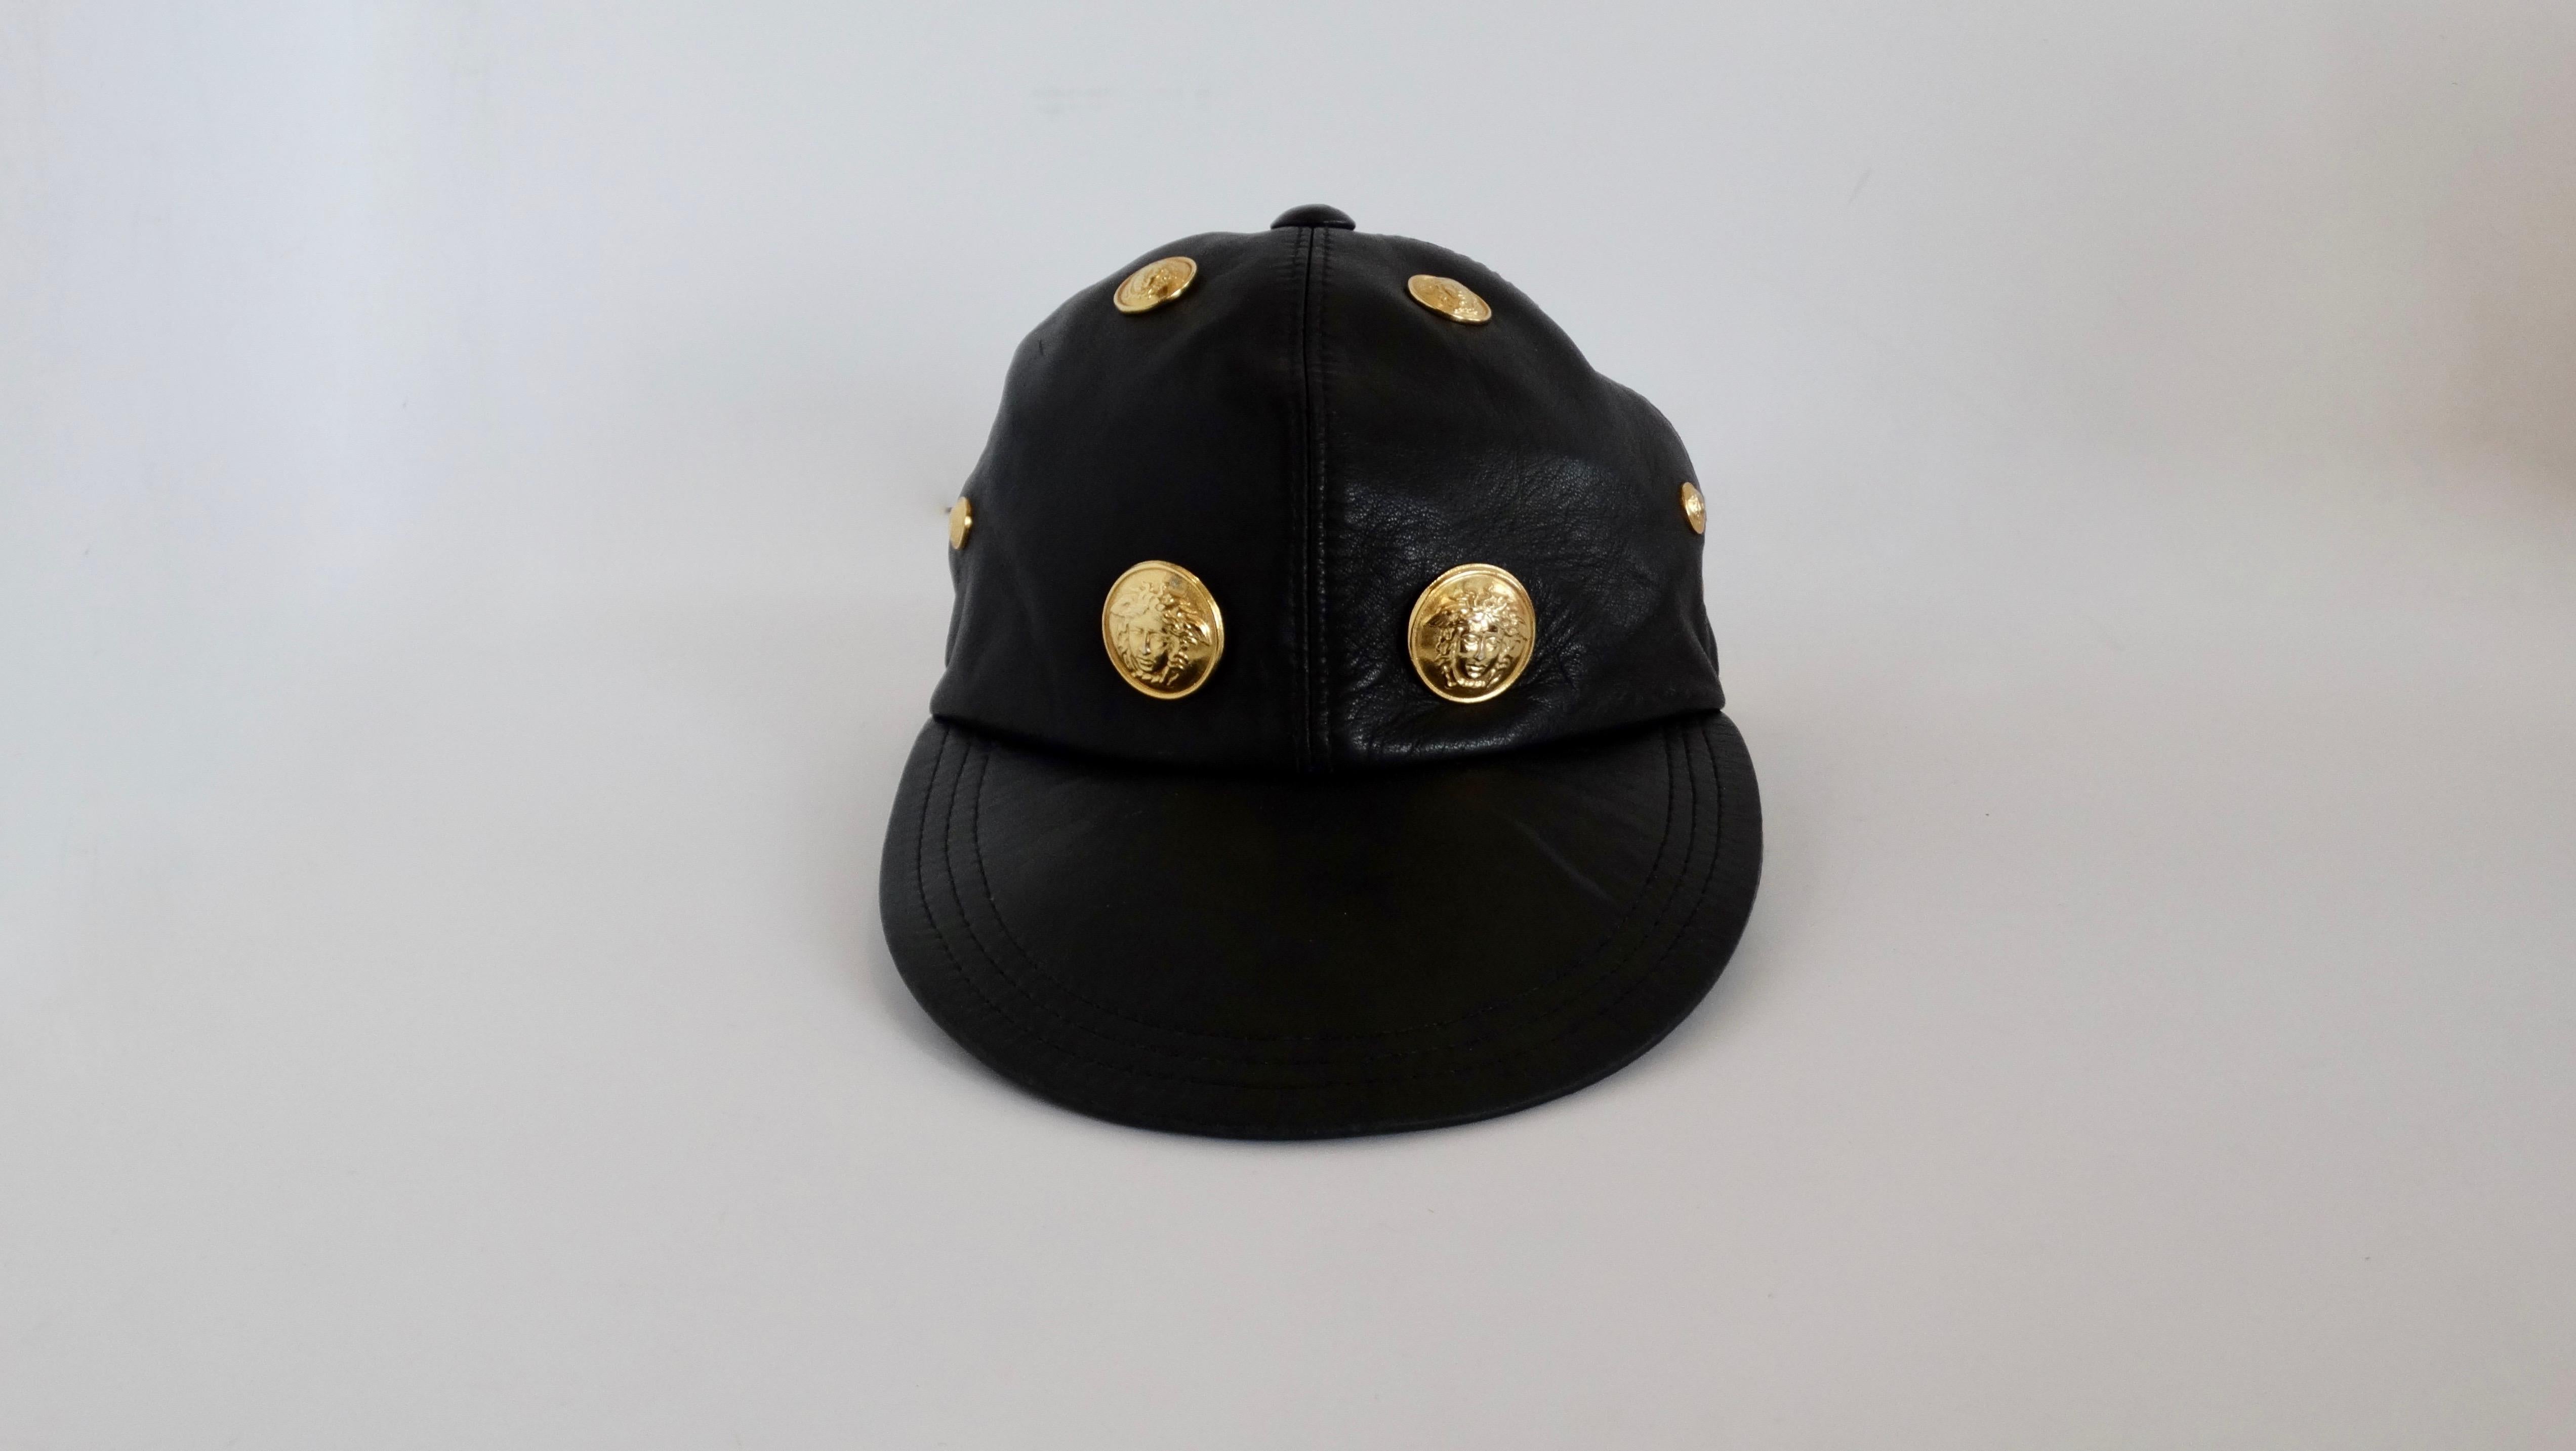 Verleihen Sie Ihrem Look einen Hauch von 90er Jahre Versace mit diesem tollen Gianni Versace Hut! Dieser Hut aus den frühen 1990er Jahren ist aus ultraweichem schwarzem Leder gefertigt und hat einen flachen Schnabel. Die Kappe ist mit goldenen